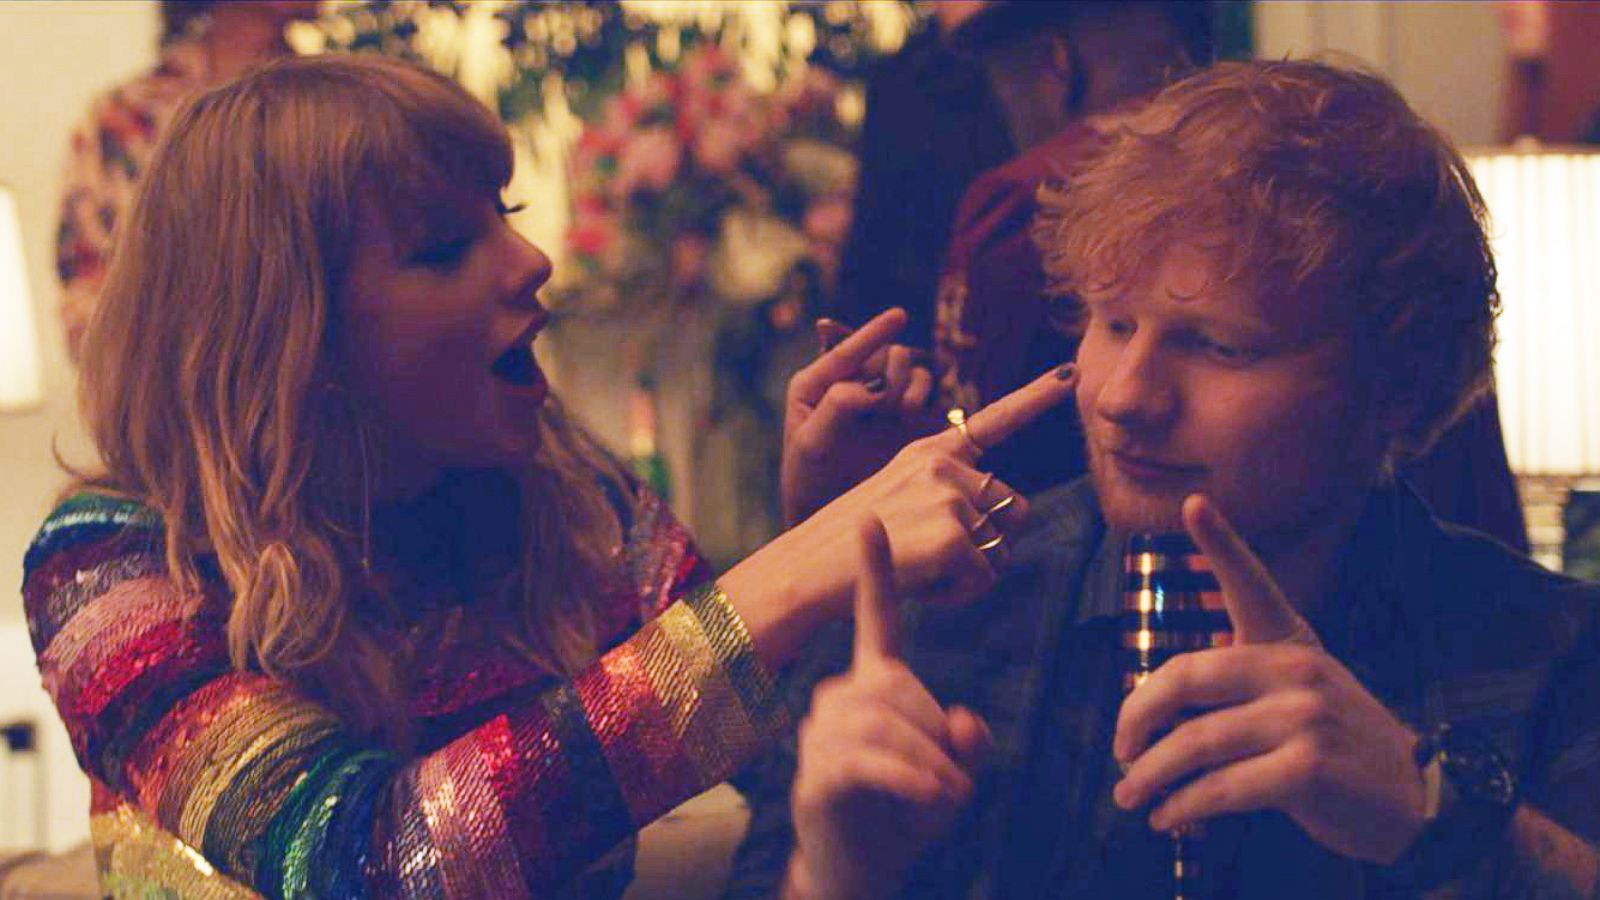 Taylor Swift Ft. Ed Sheeran & Future - End Game [karaoke/Instrumental] 